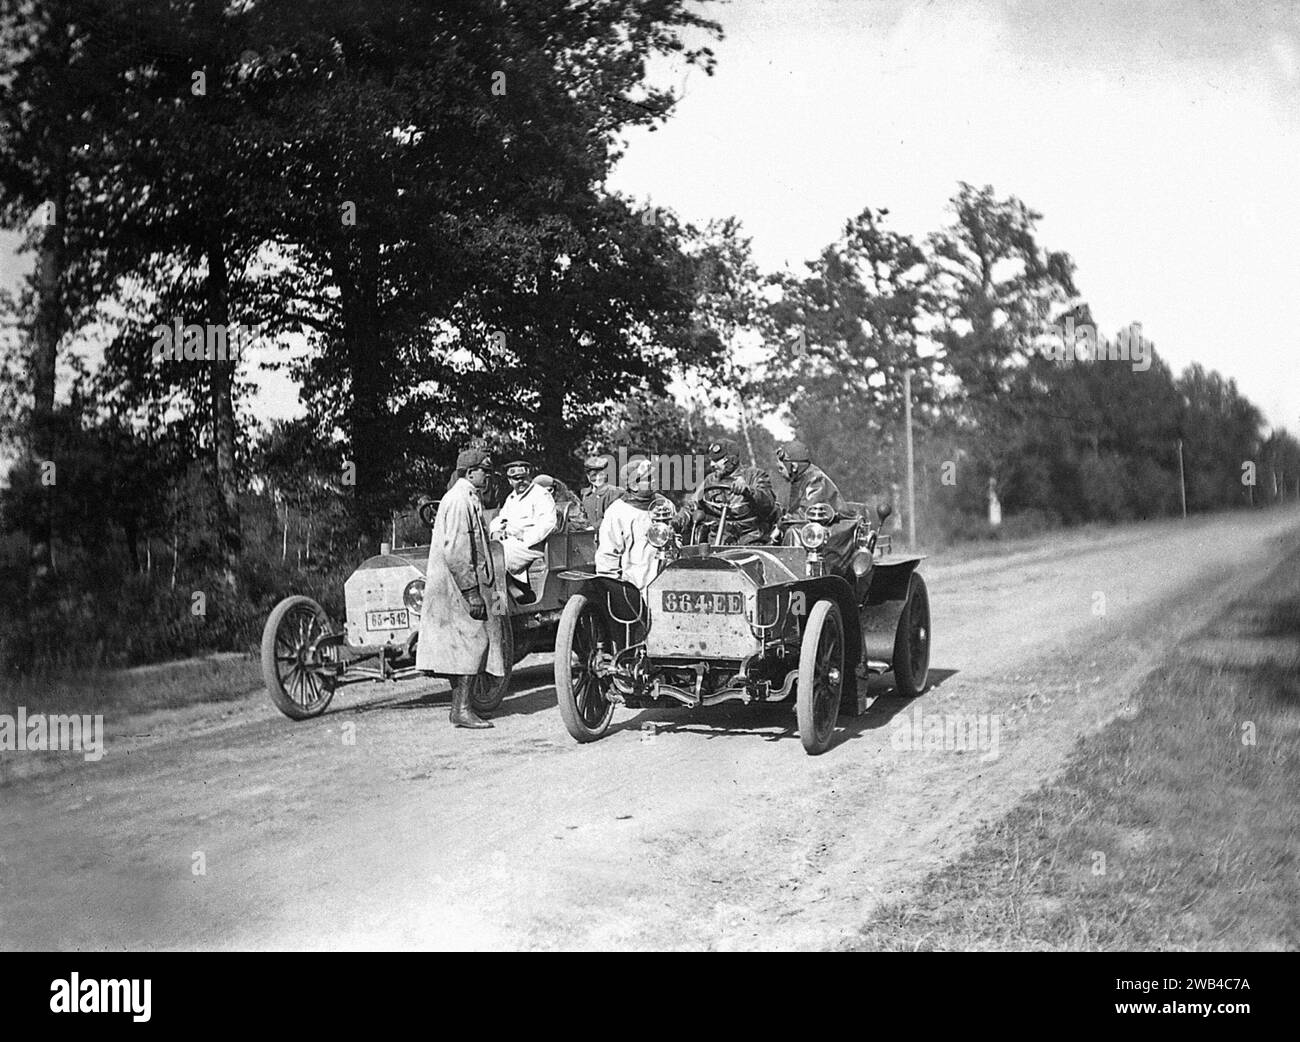 Prima edizione della 24 ore di le Mans endurance sport car race (24 heures du Mans). 26 e 27 giugno 1906. Due auto si sono fermate in mezzo alla strada. Foto di Jean de Biré Foto Stock